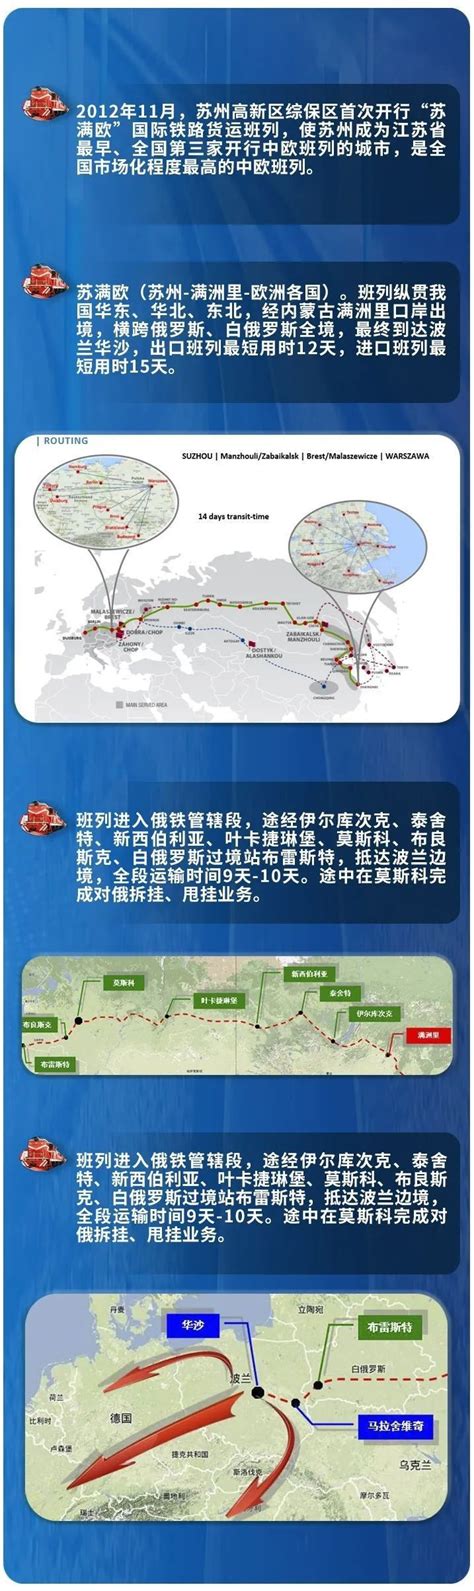 中国（苏州）跨境电子商务综合试验区在园区启动 “单一窗口”平台同期启动 - 高端制造与国际贸易区